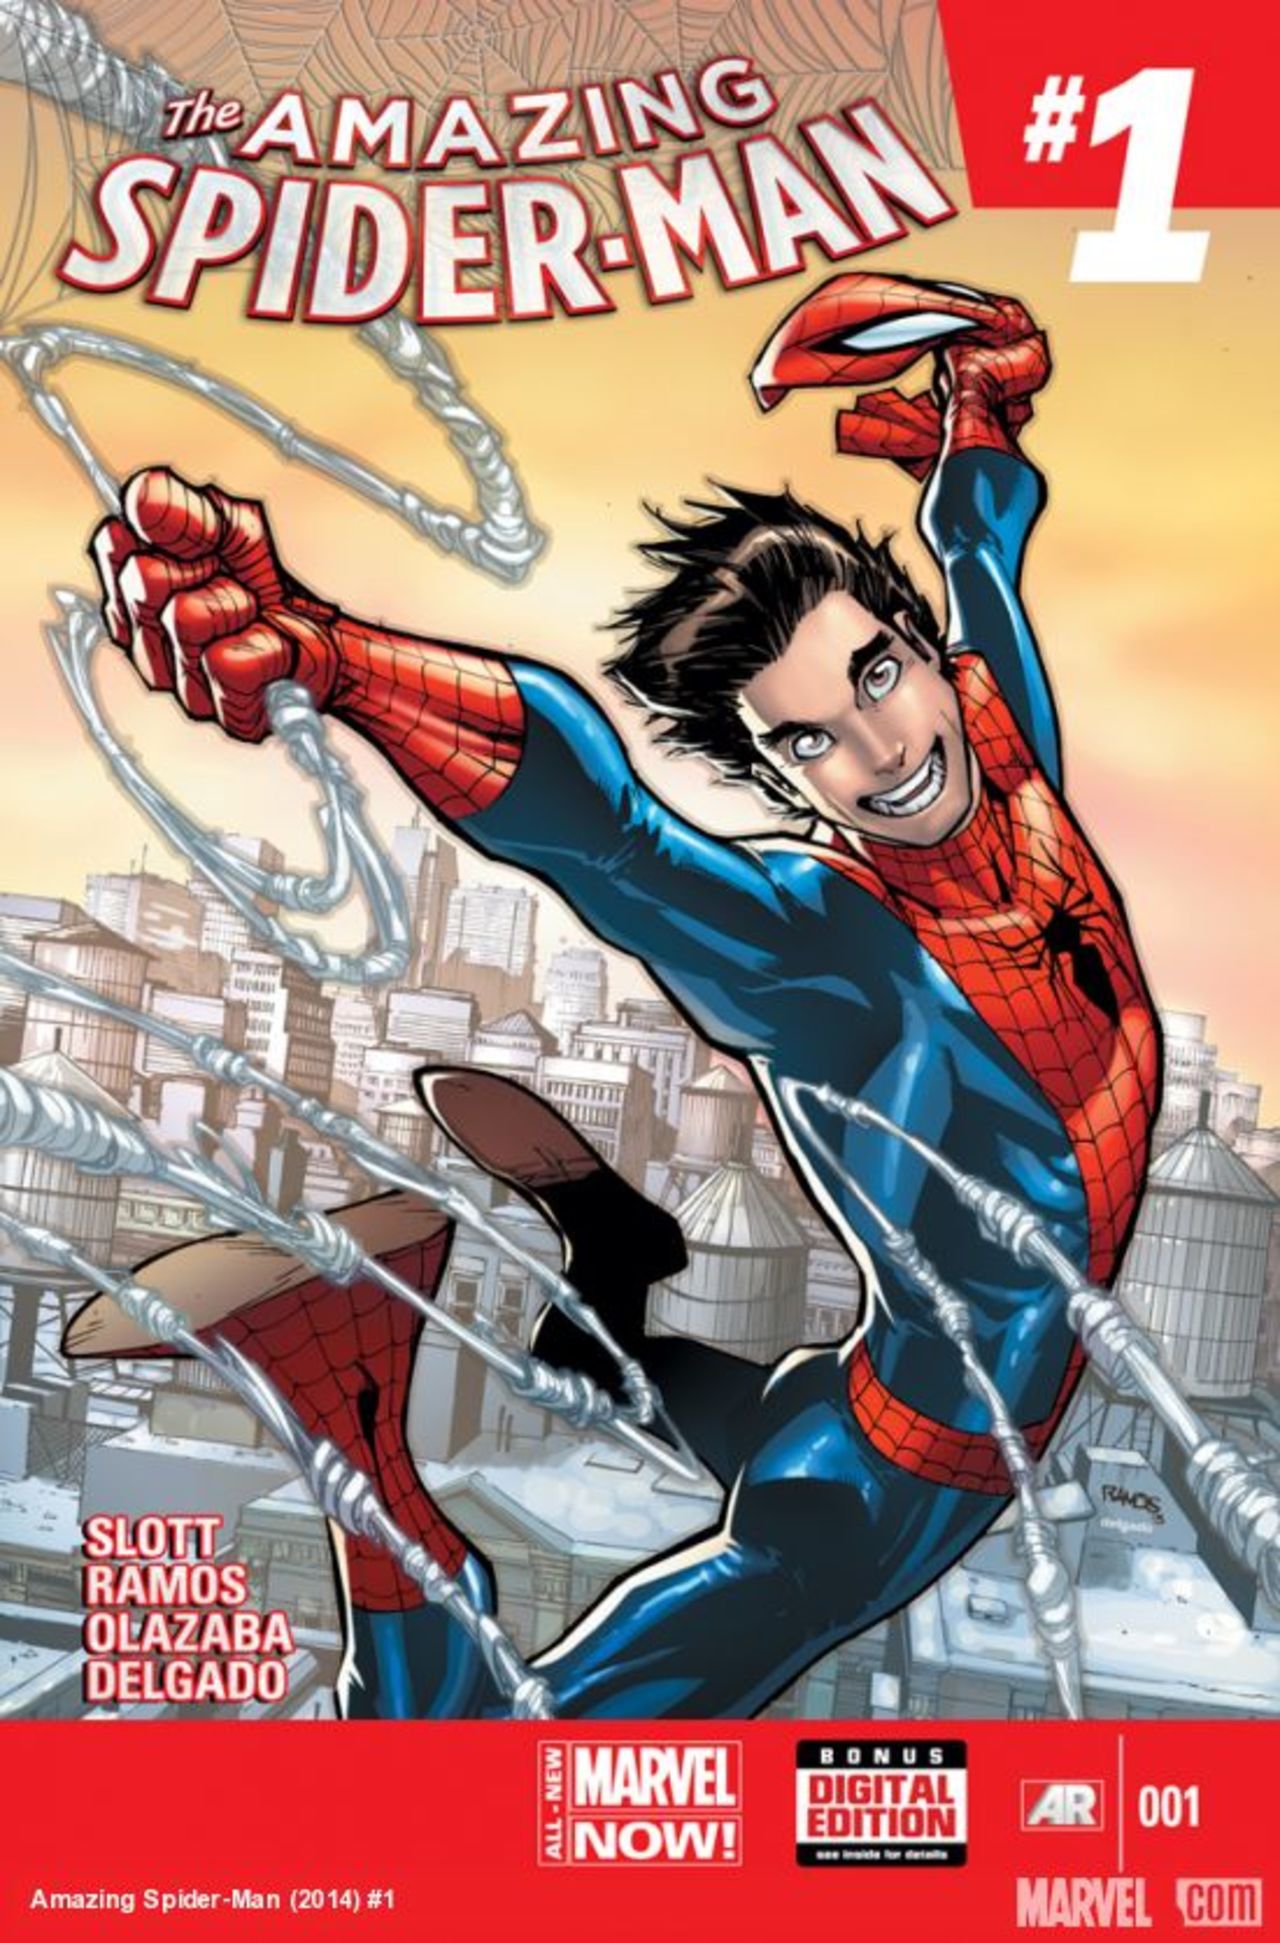 Peter Parker returns to 'Spider-Man' comics | CNN